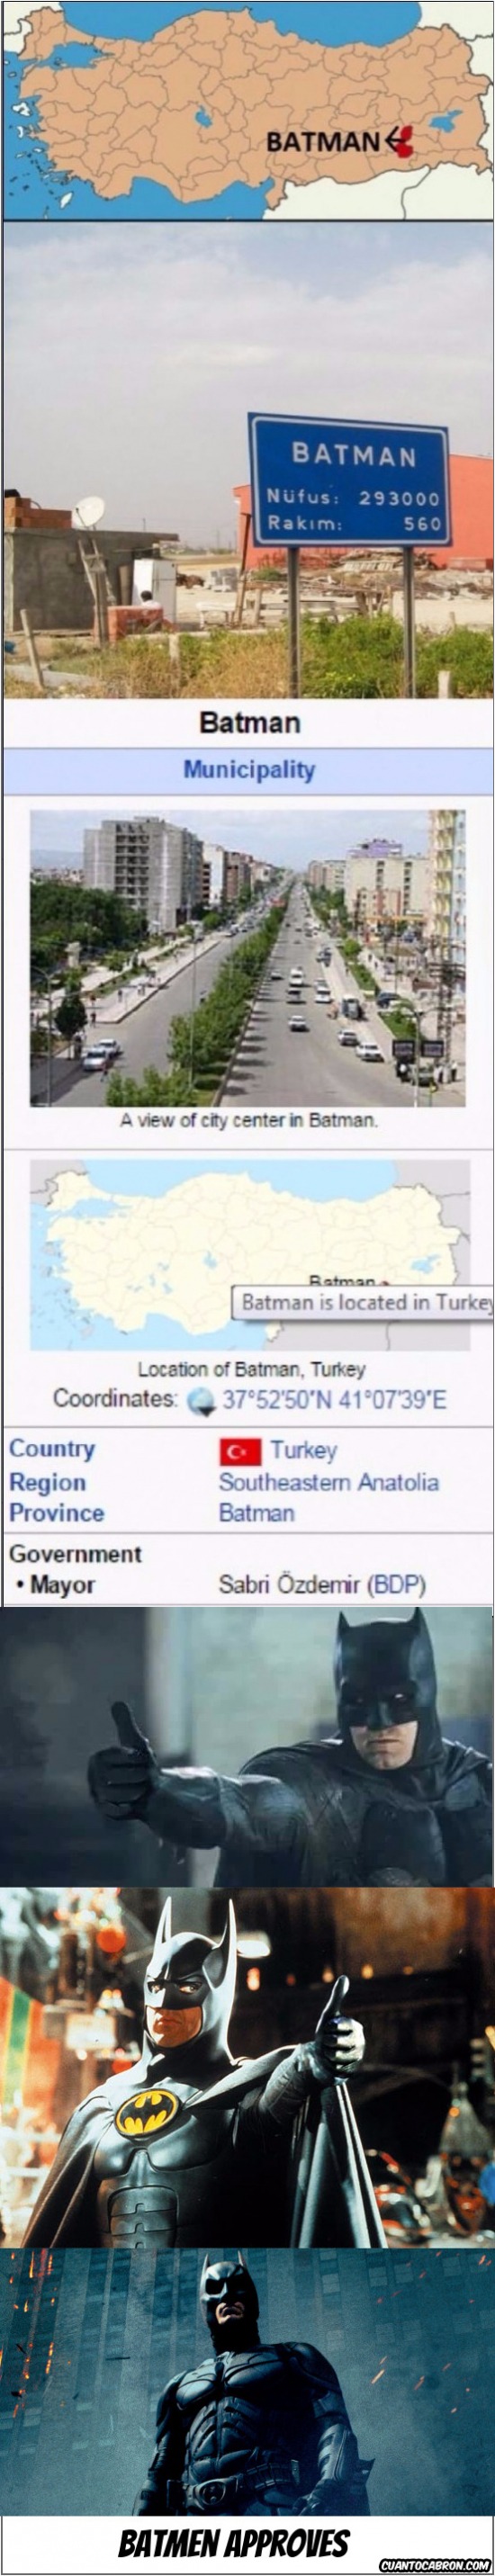 la ciudad de batman turquia